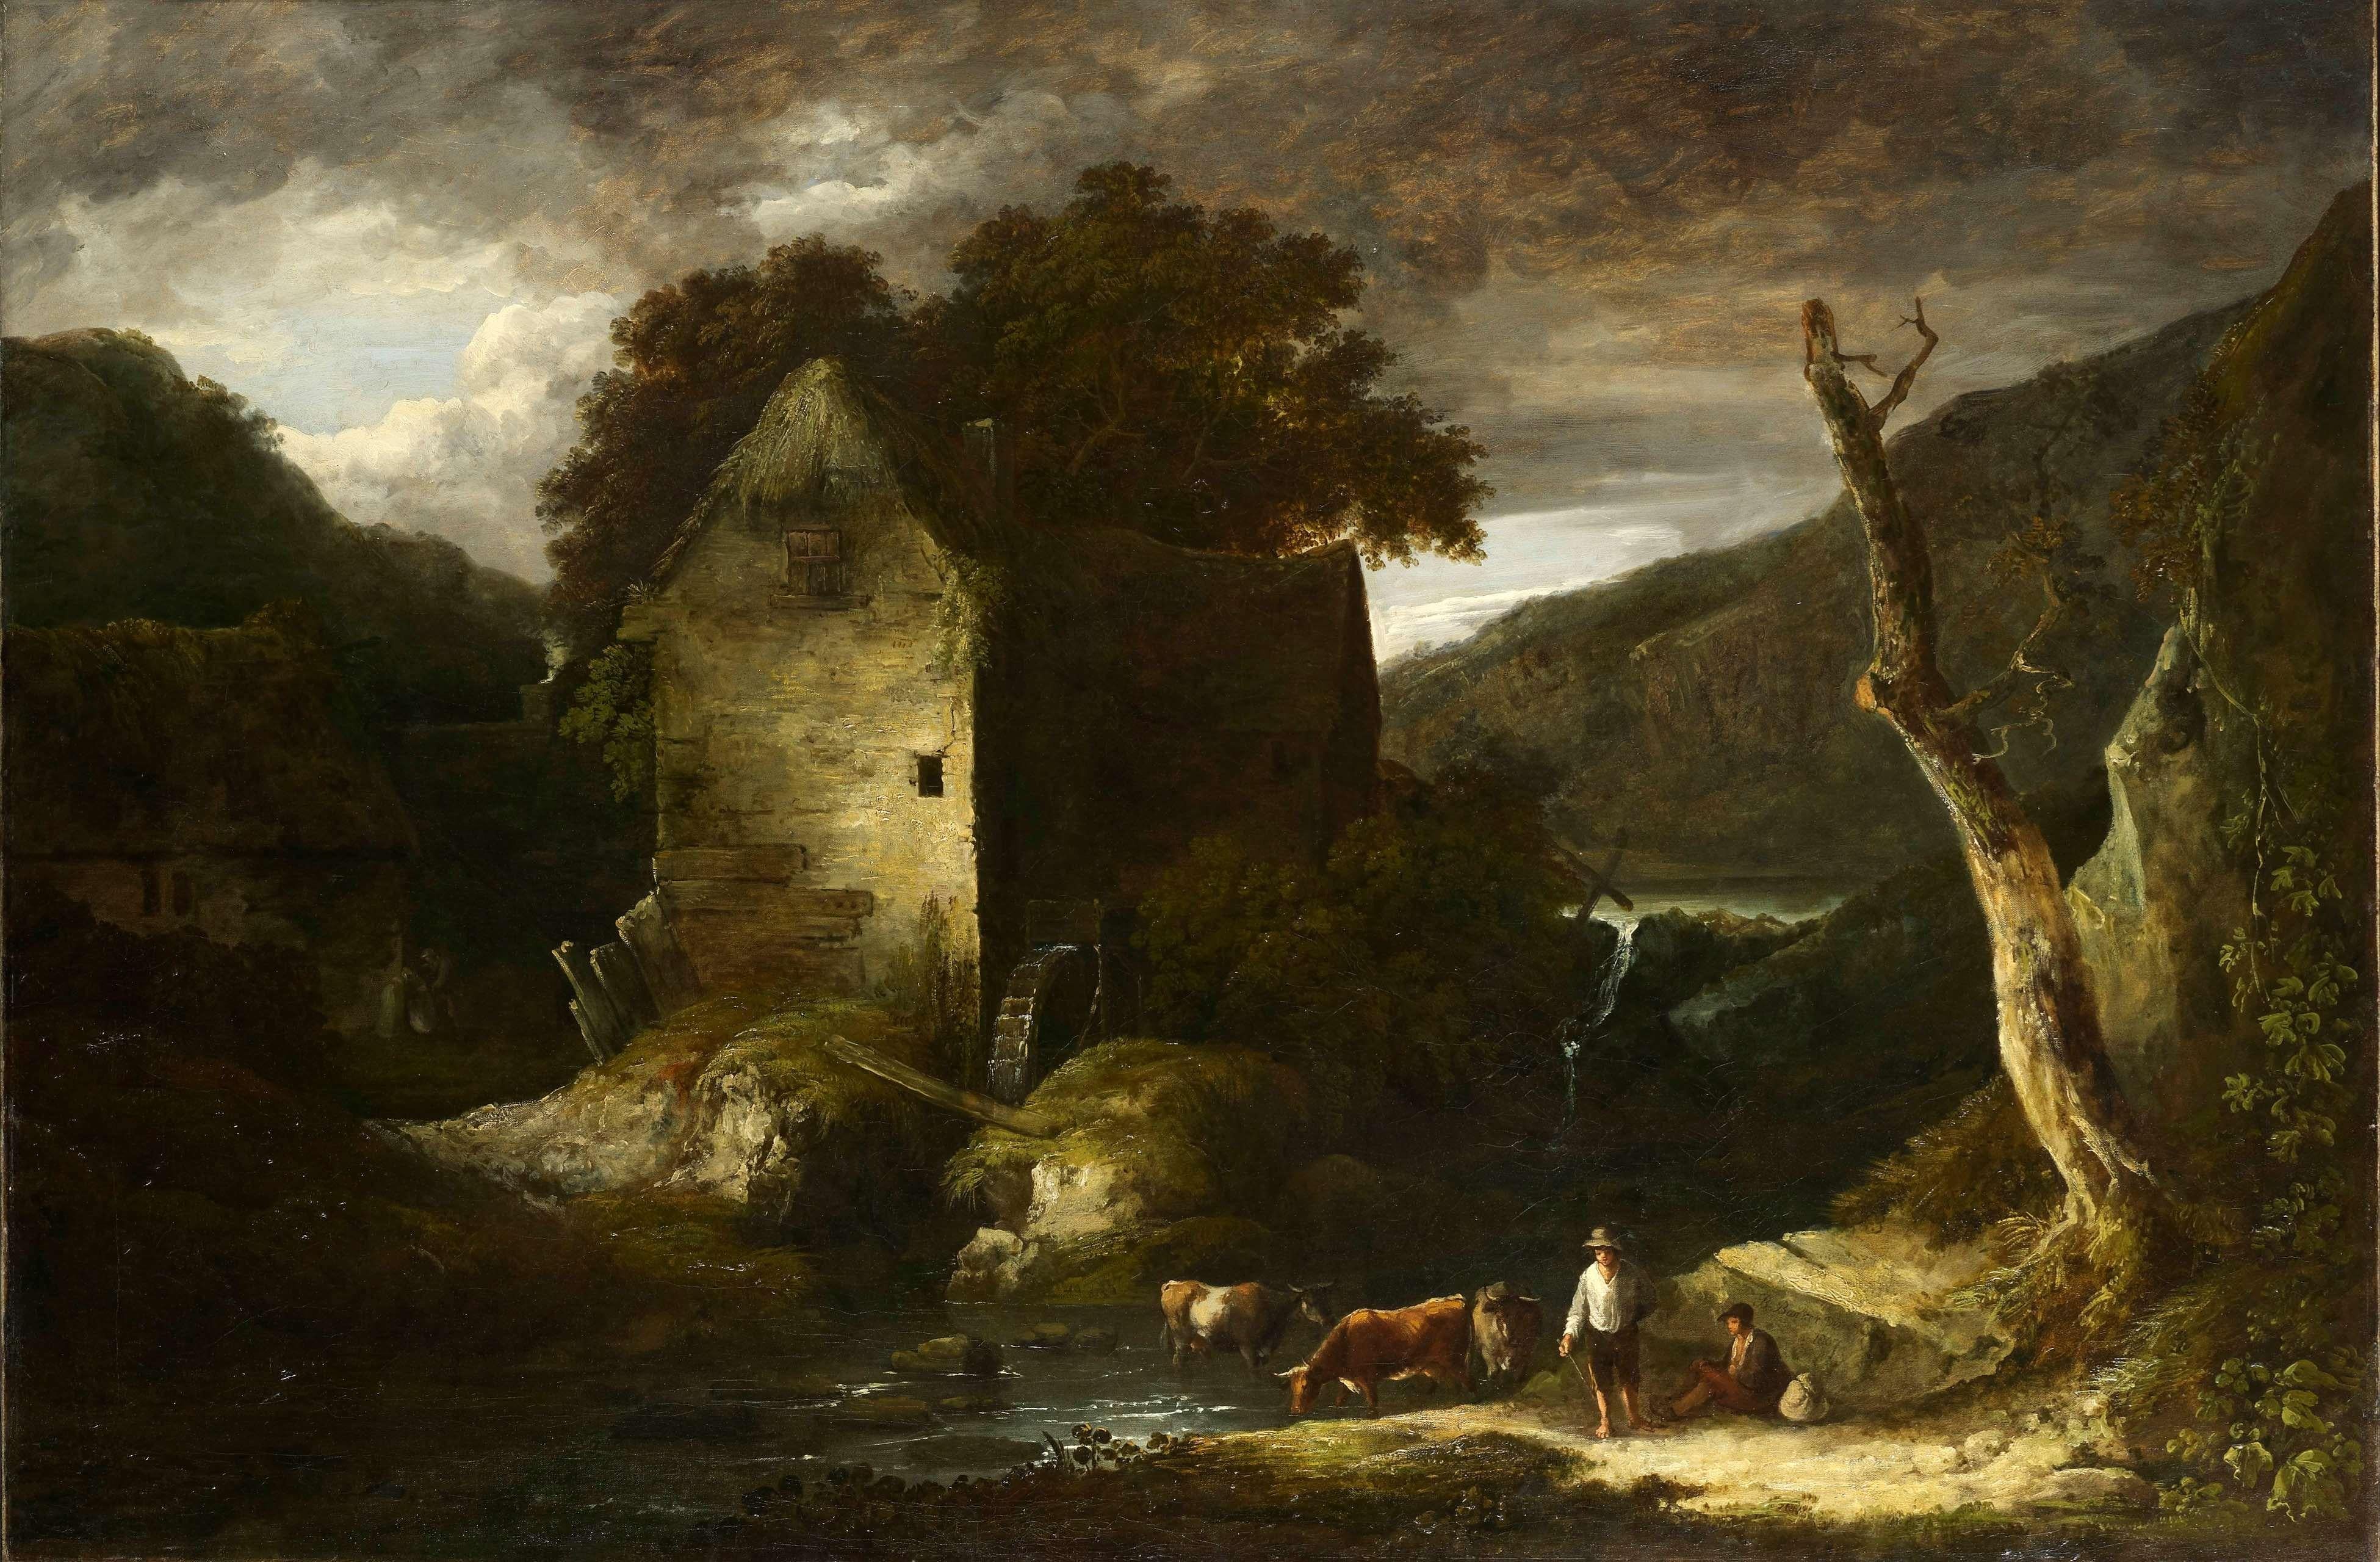 Landscape Painting Benjamin Barker of Bath - Un grand paysage fluvial boisé avec des braguettes